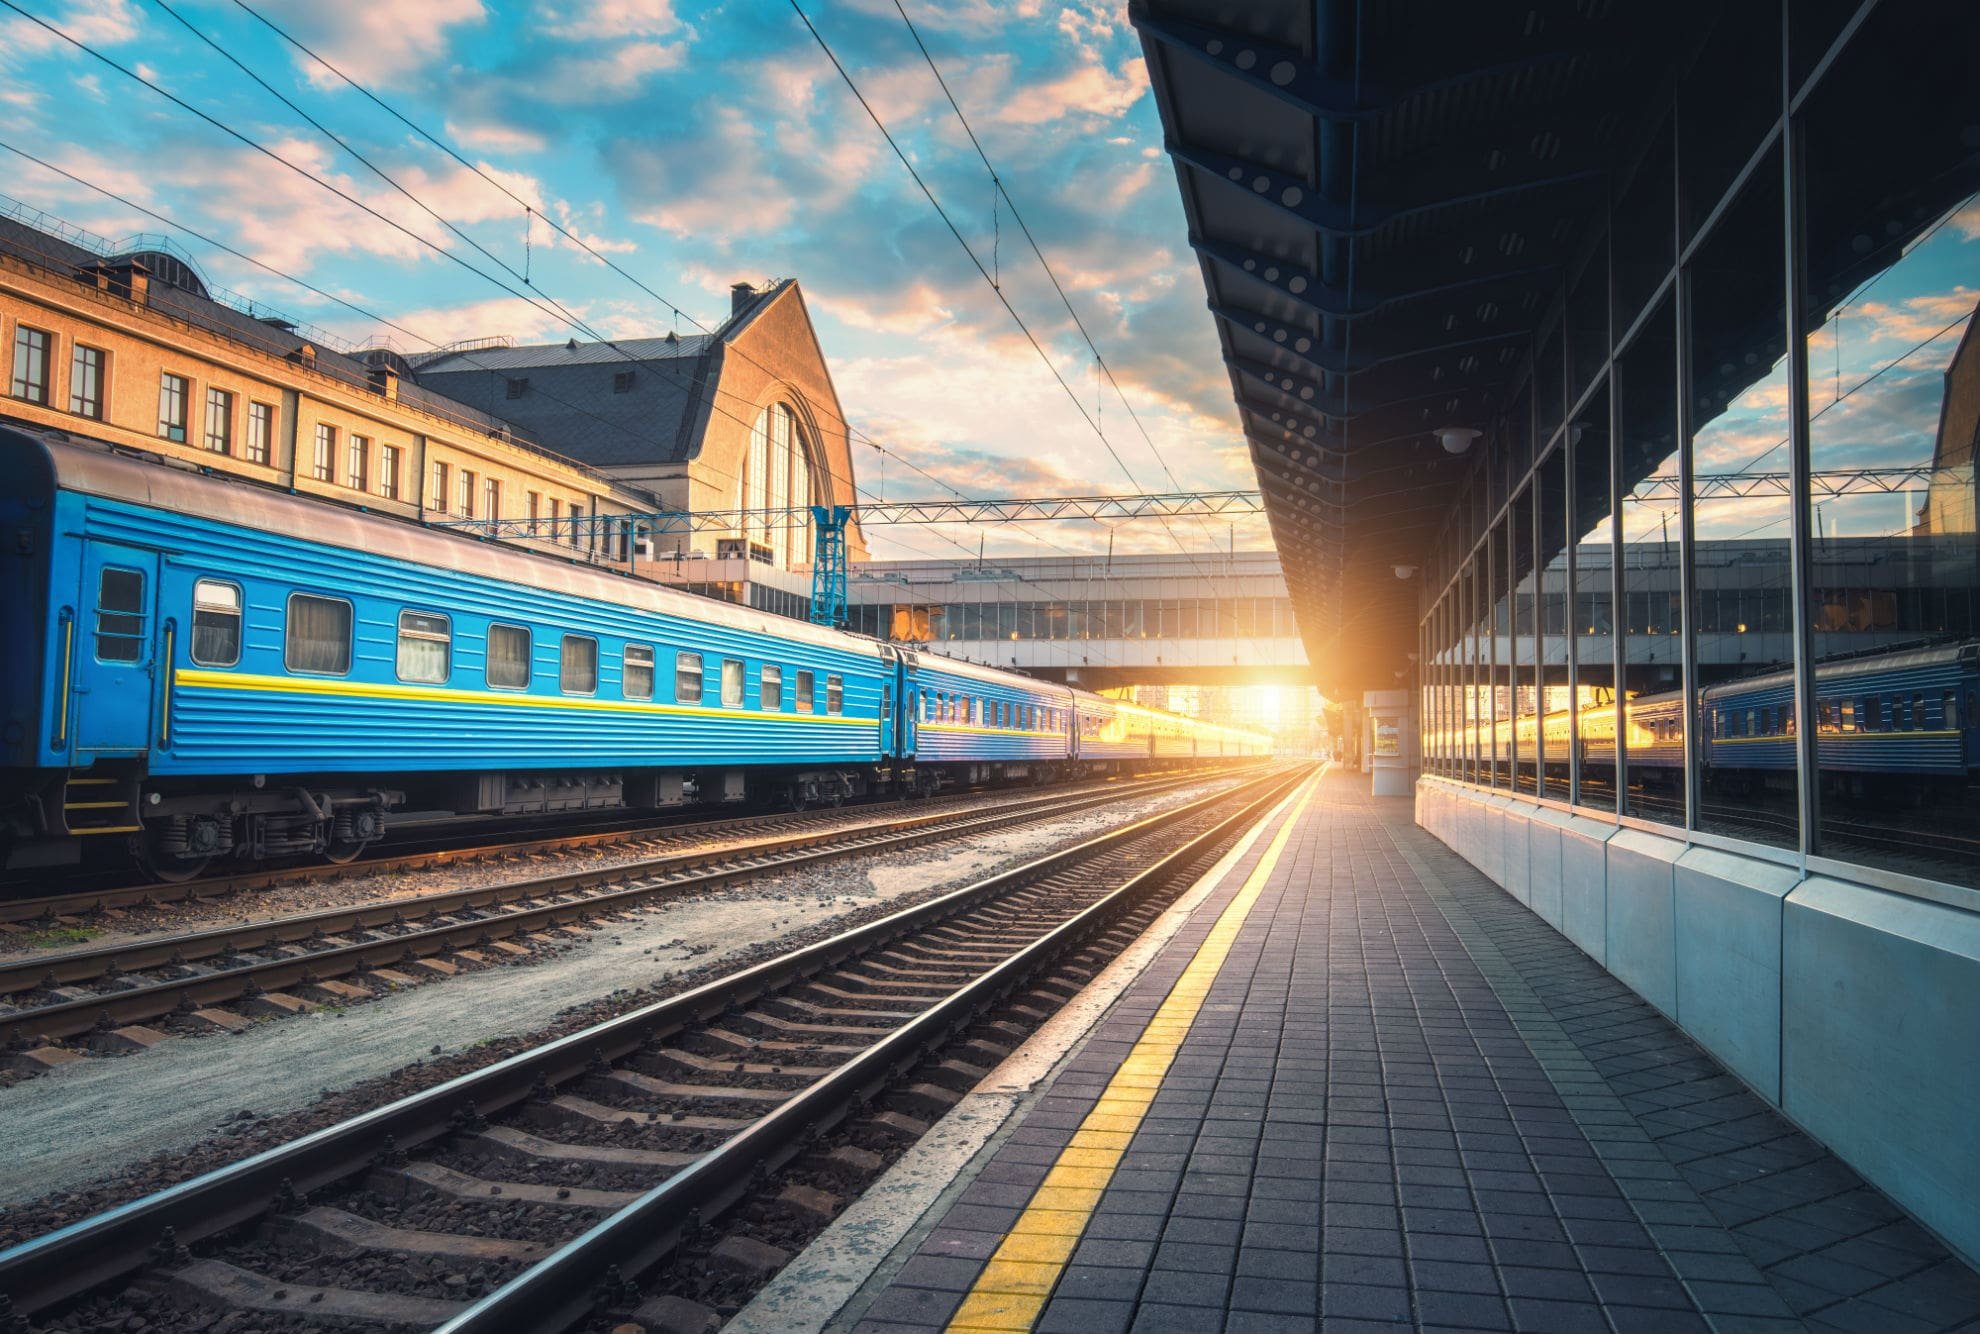 «Укрзалізниця» запустила поезд в Словакию